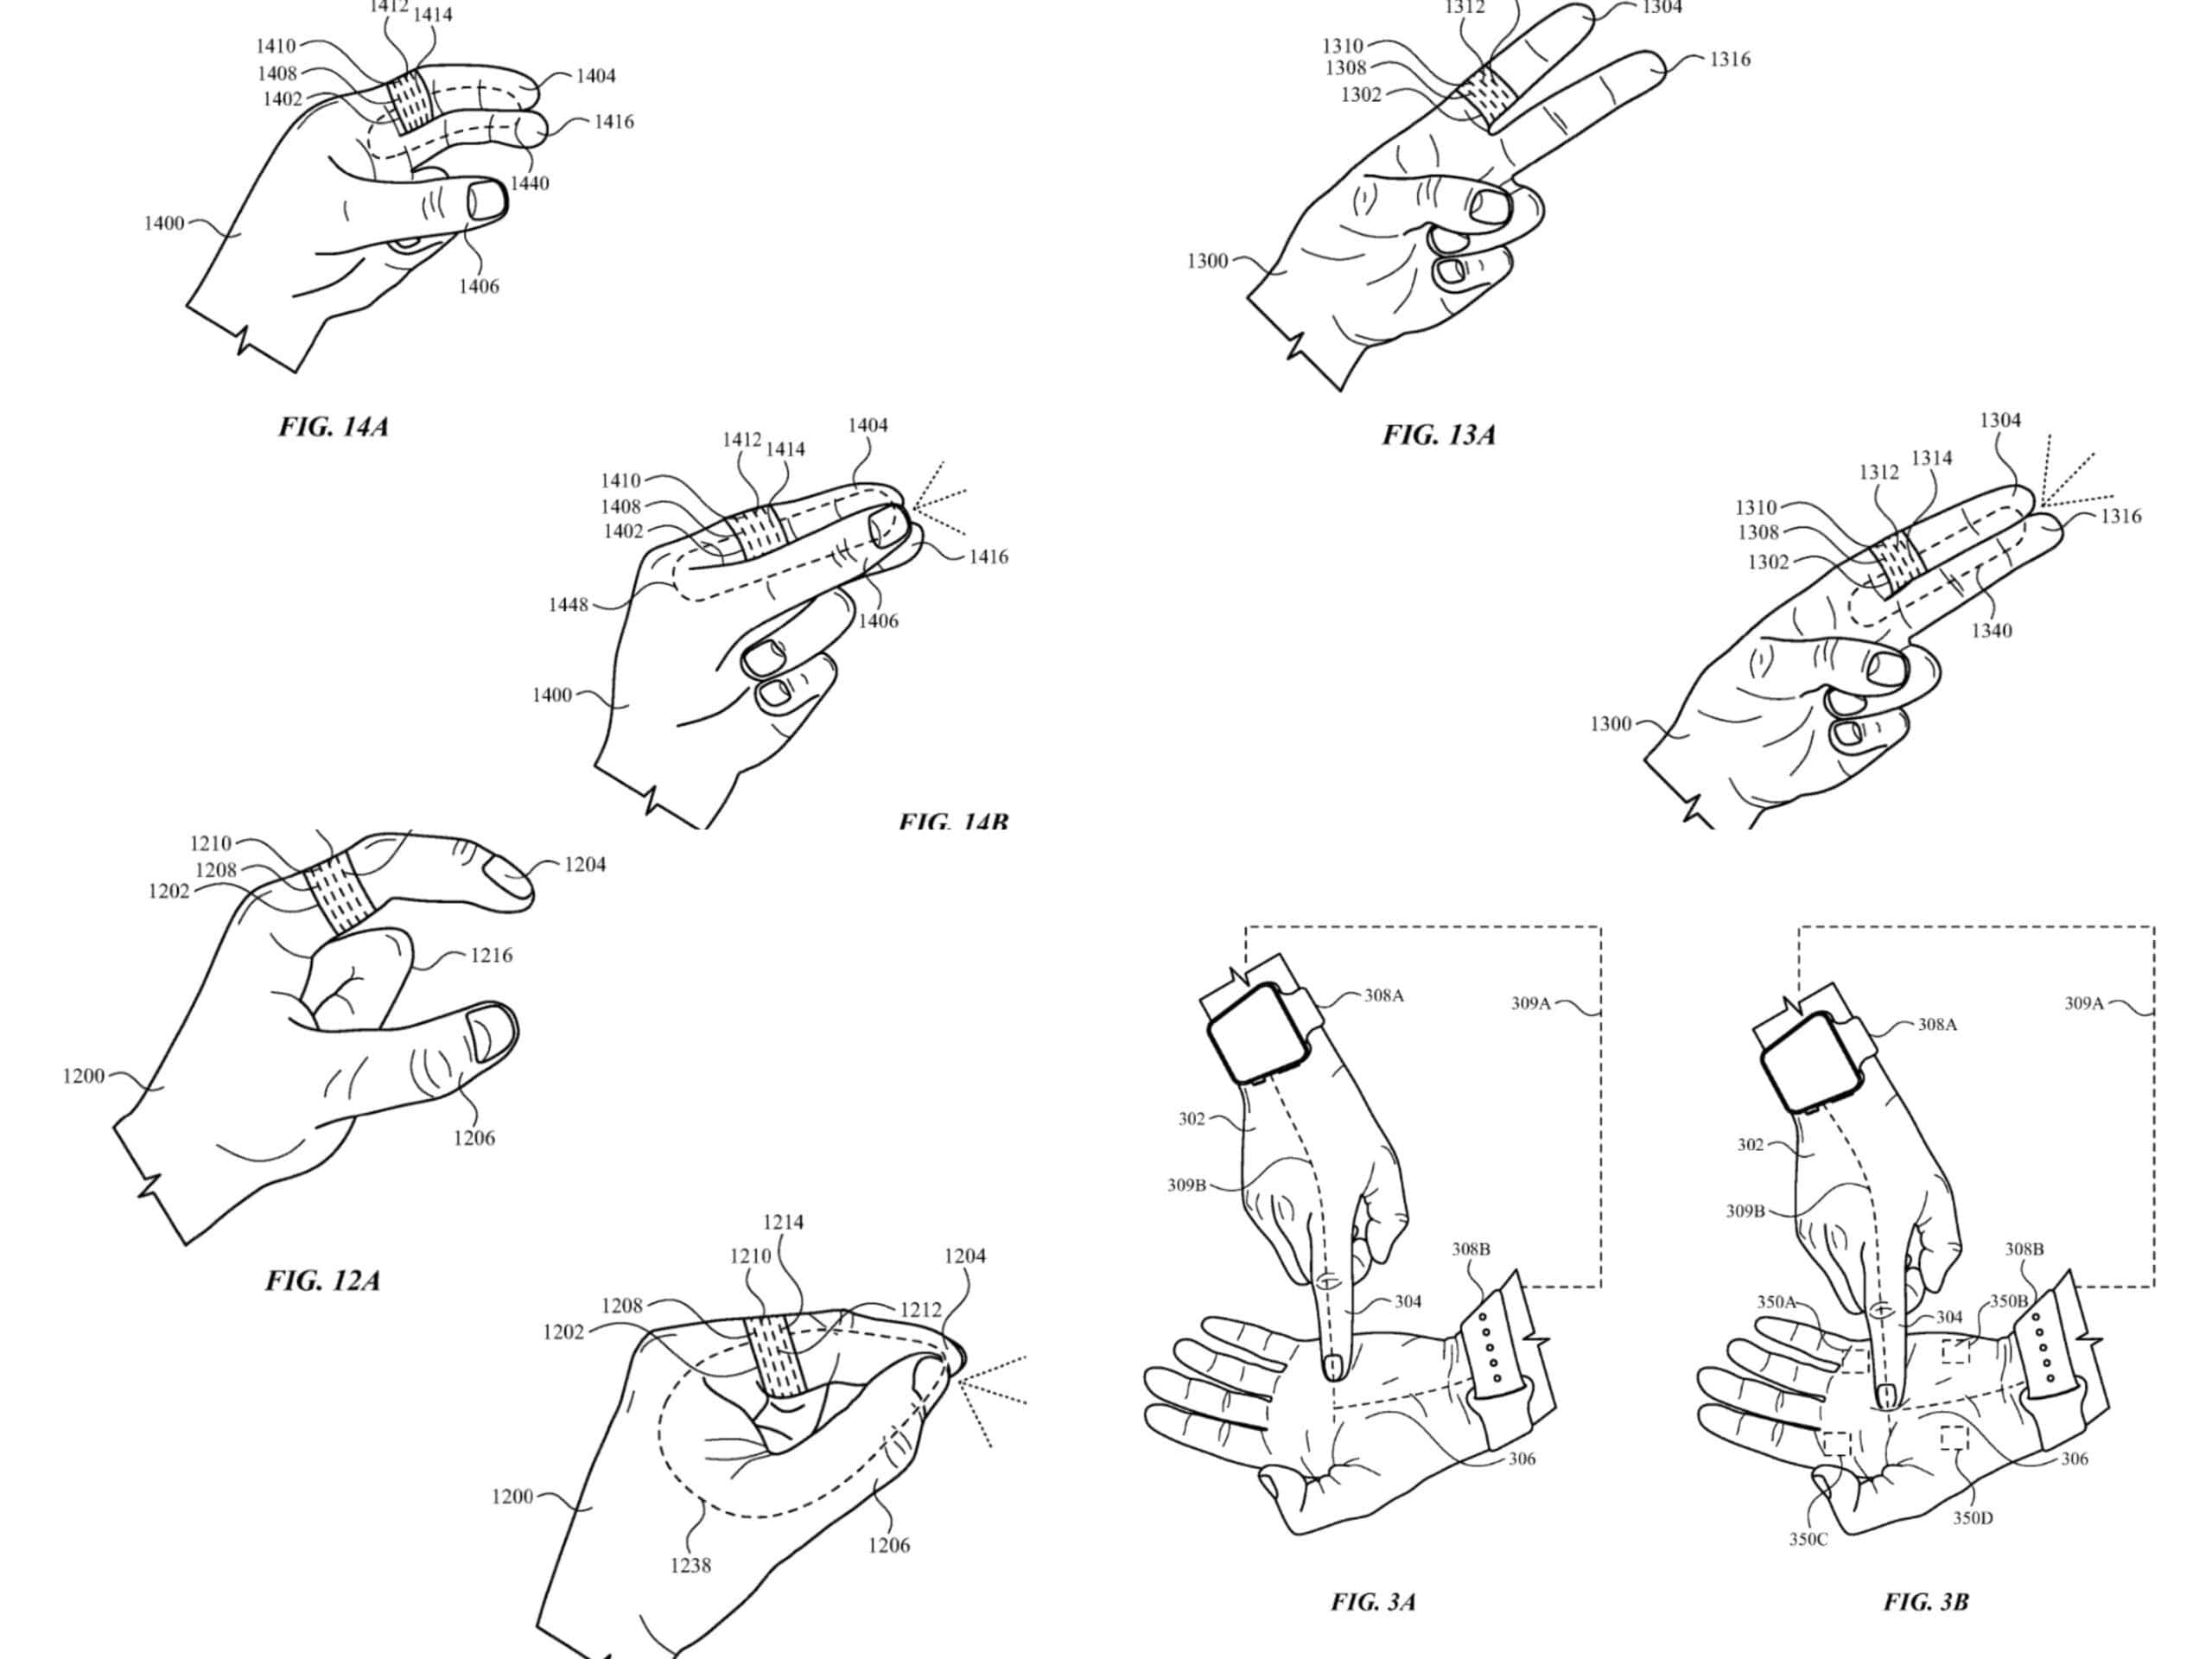 Patente del anillo inteligente de Apple